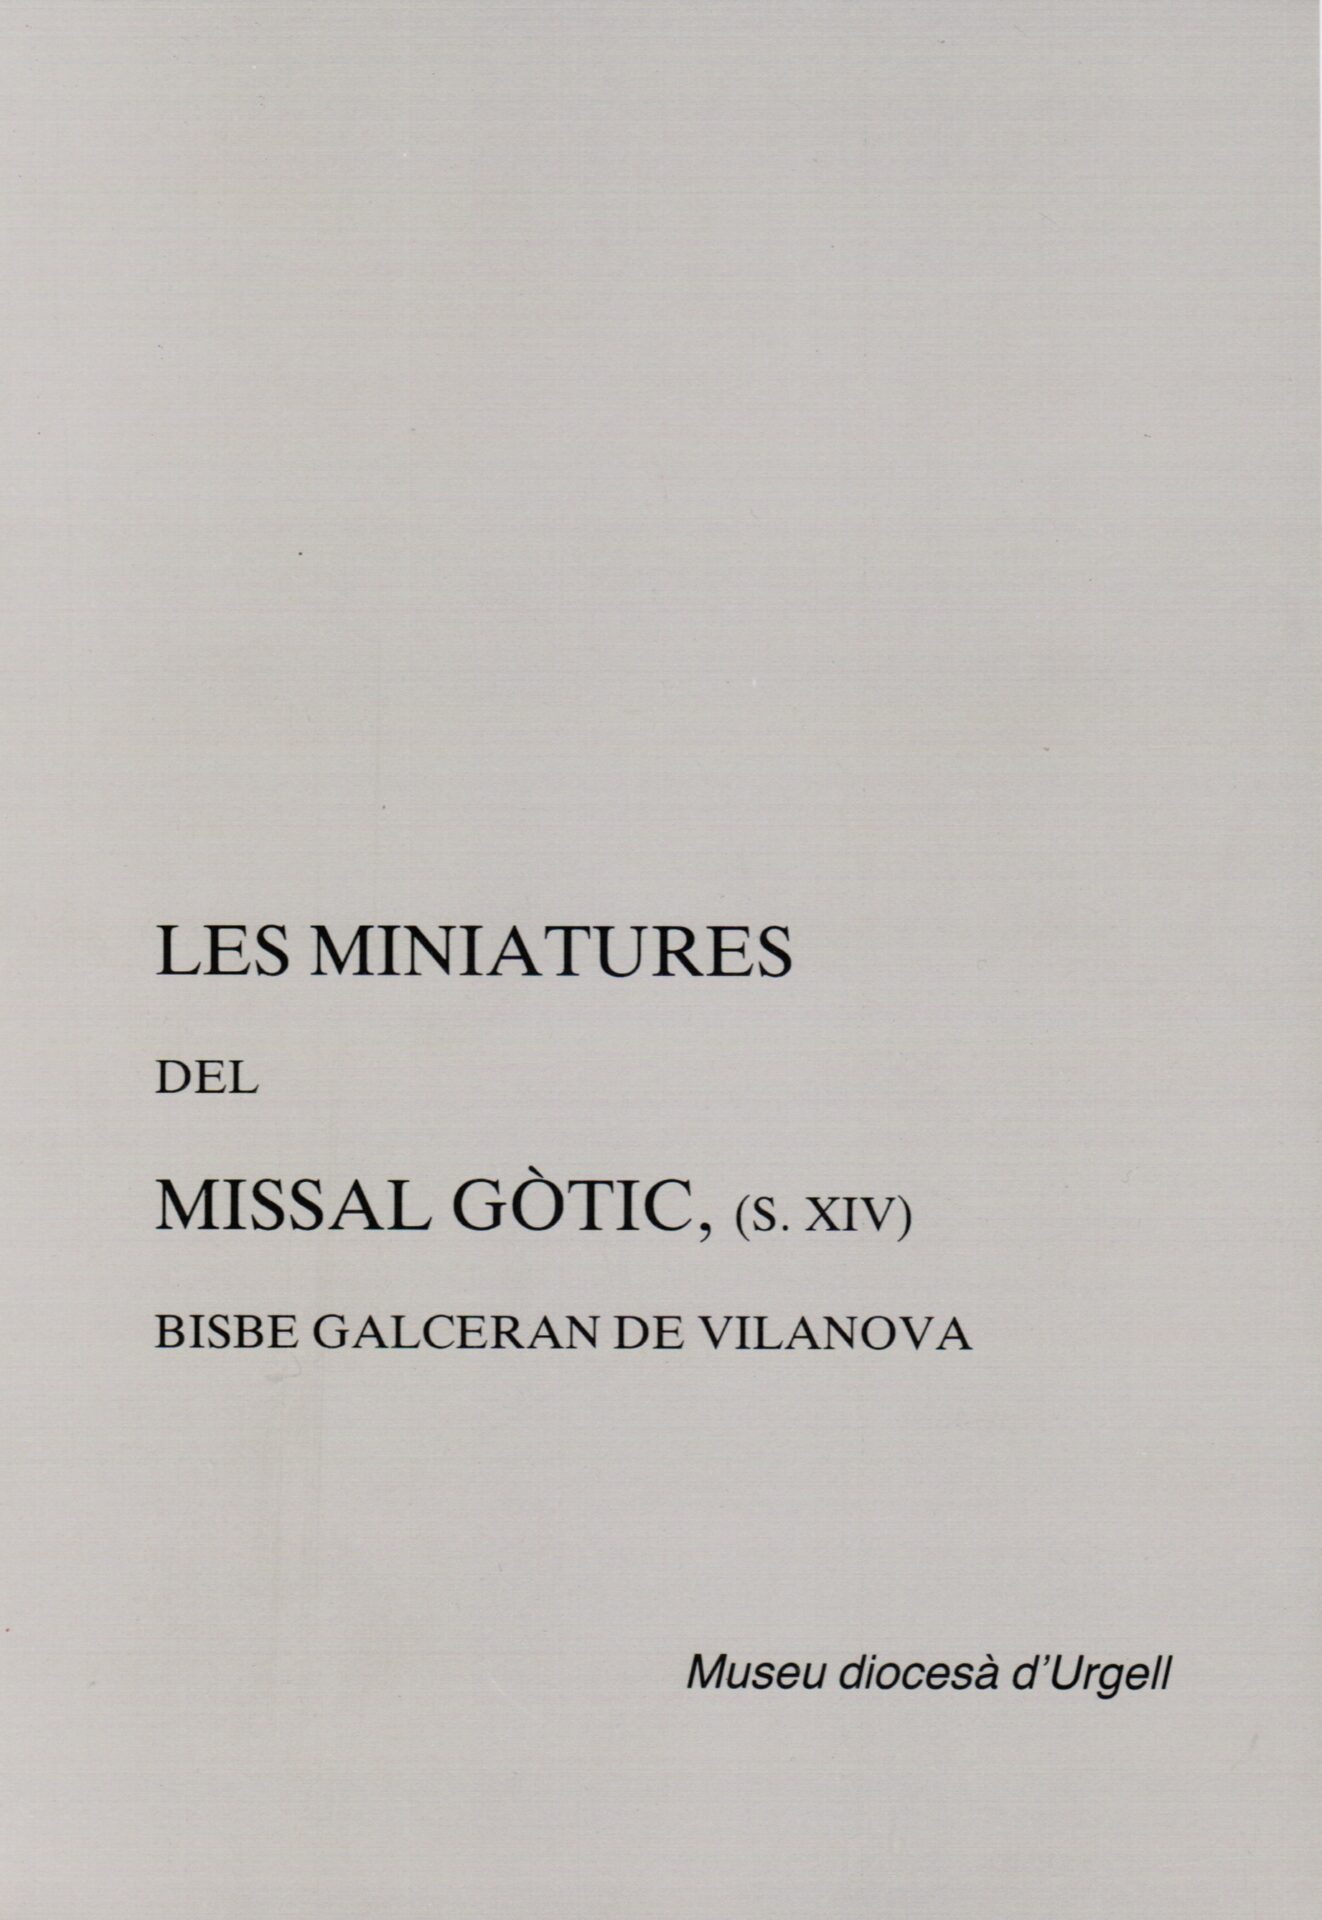 Llibre les miniatures del missal gòtic de galceran de vilanova